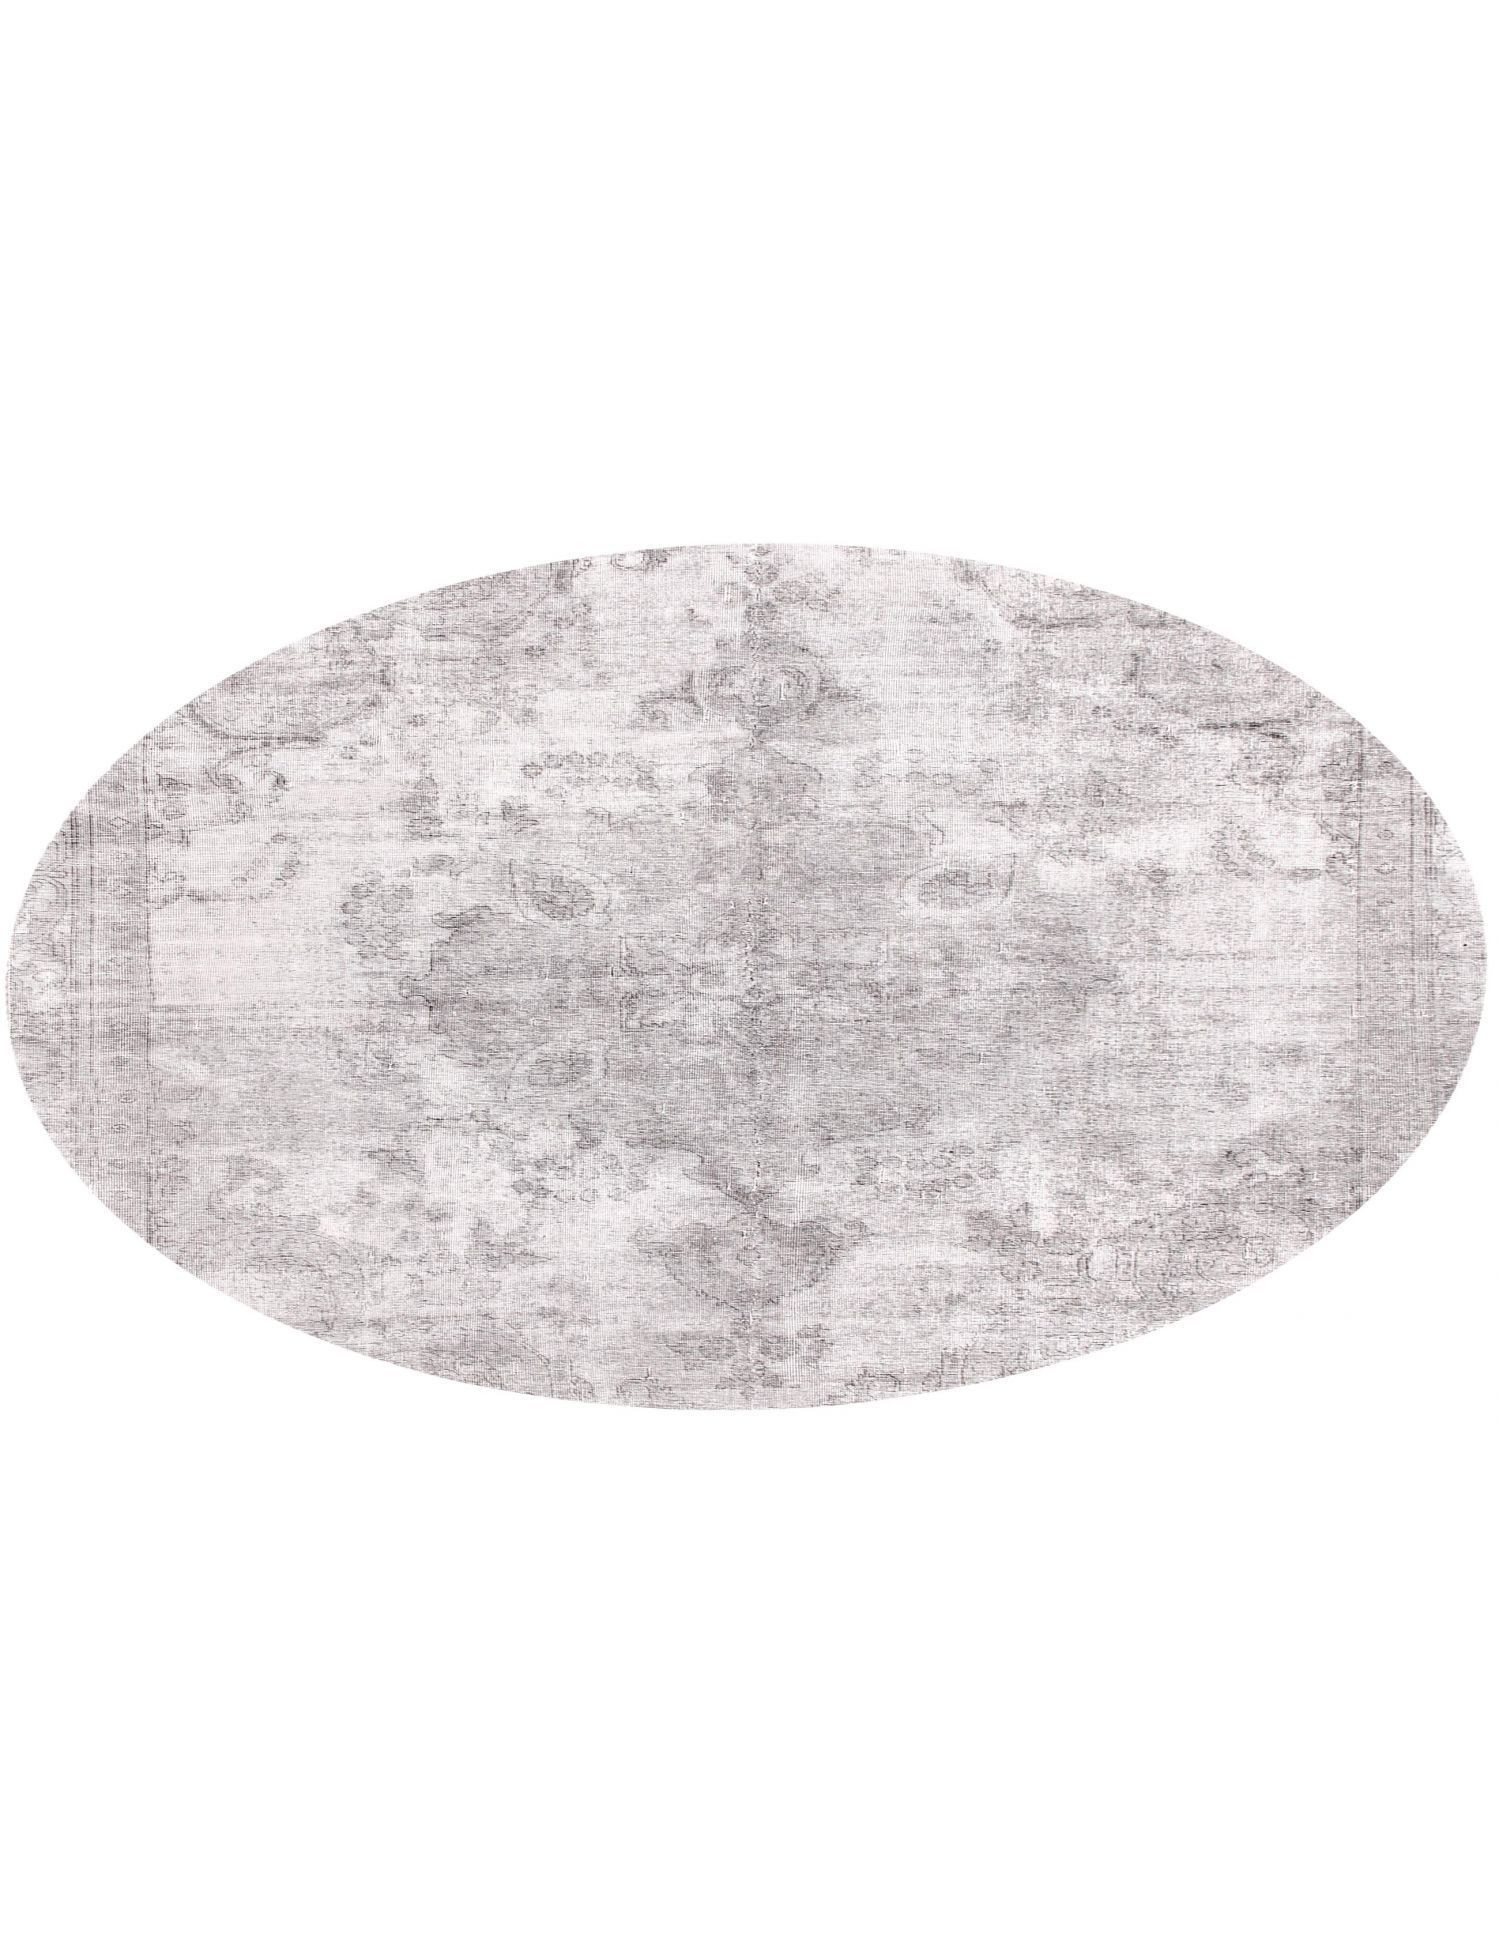 Rund  Vintage Teppich  grau <br/>256 x 256 cm